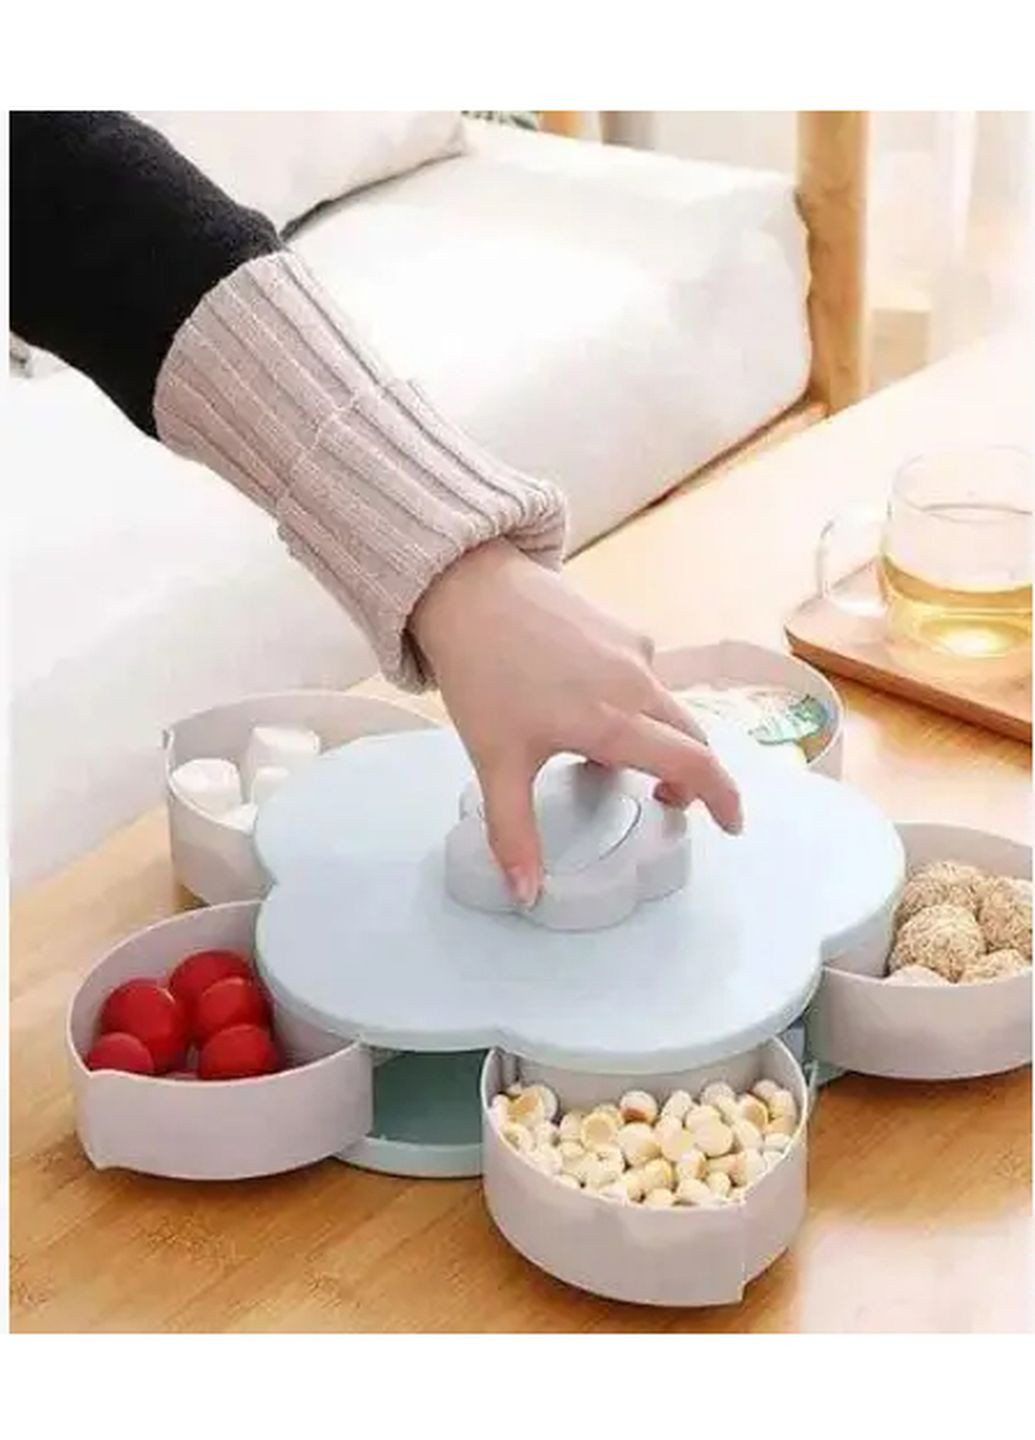 Раздвижная менажница тарелка органайзер для закусок сухофруктов и конфет с подставкой для телефона Kitchen Master (268369550)